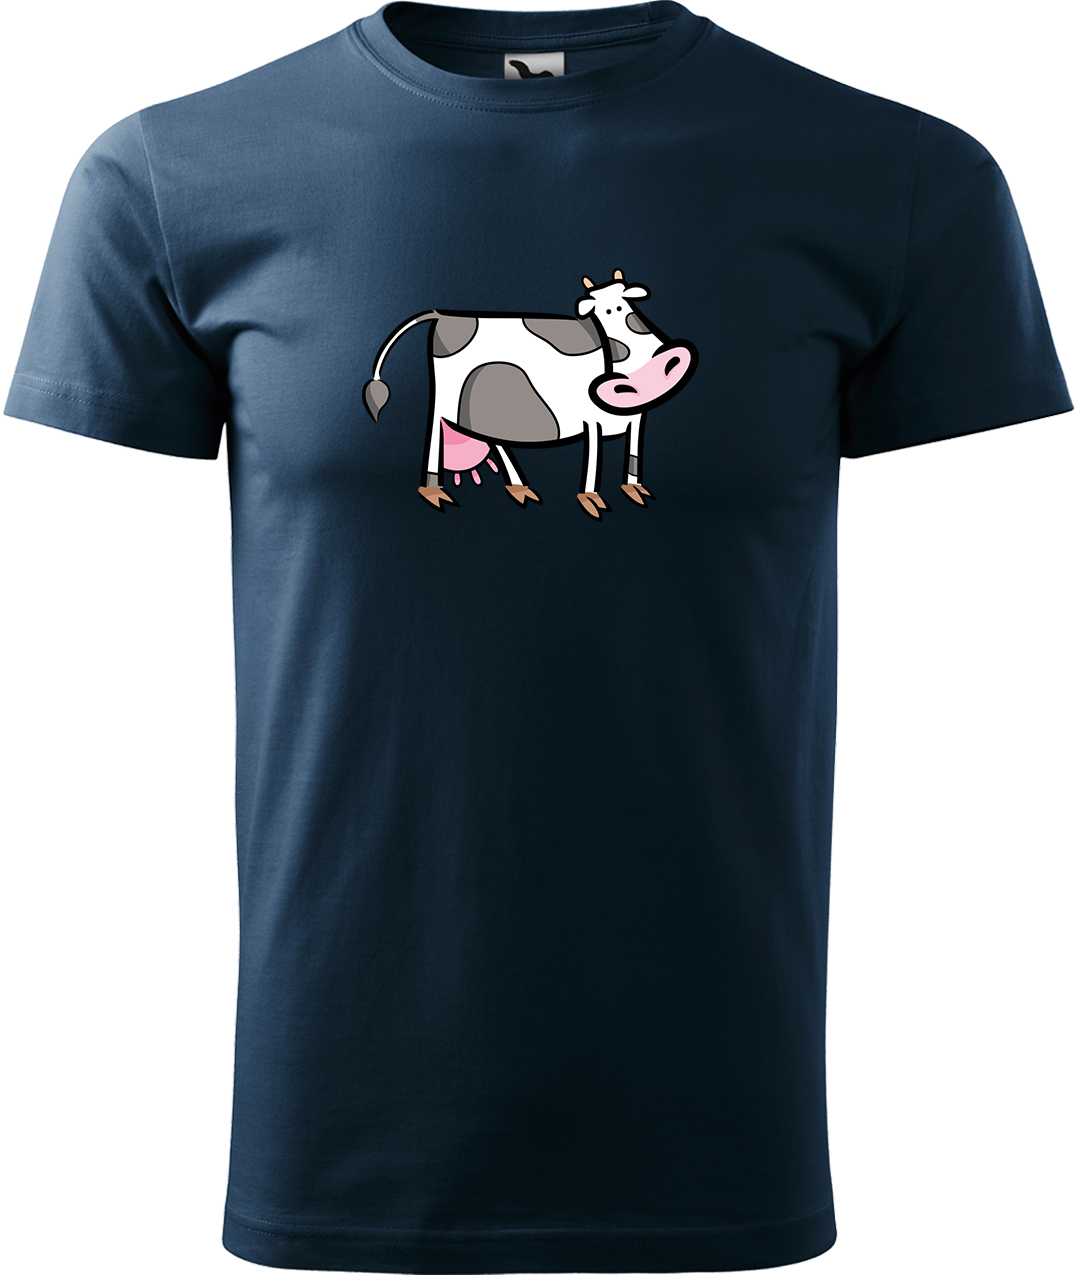 Pánské tričko s krávou - Kravička Velikost: L, Barva: Námořní modrá (02), Střih: pánský